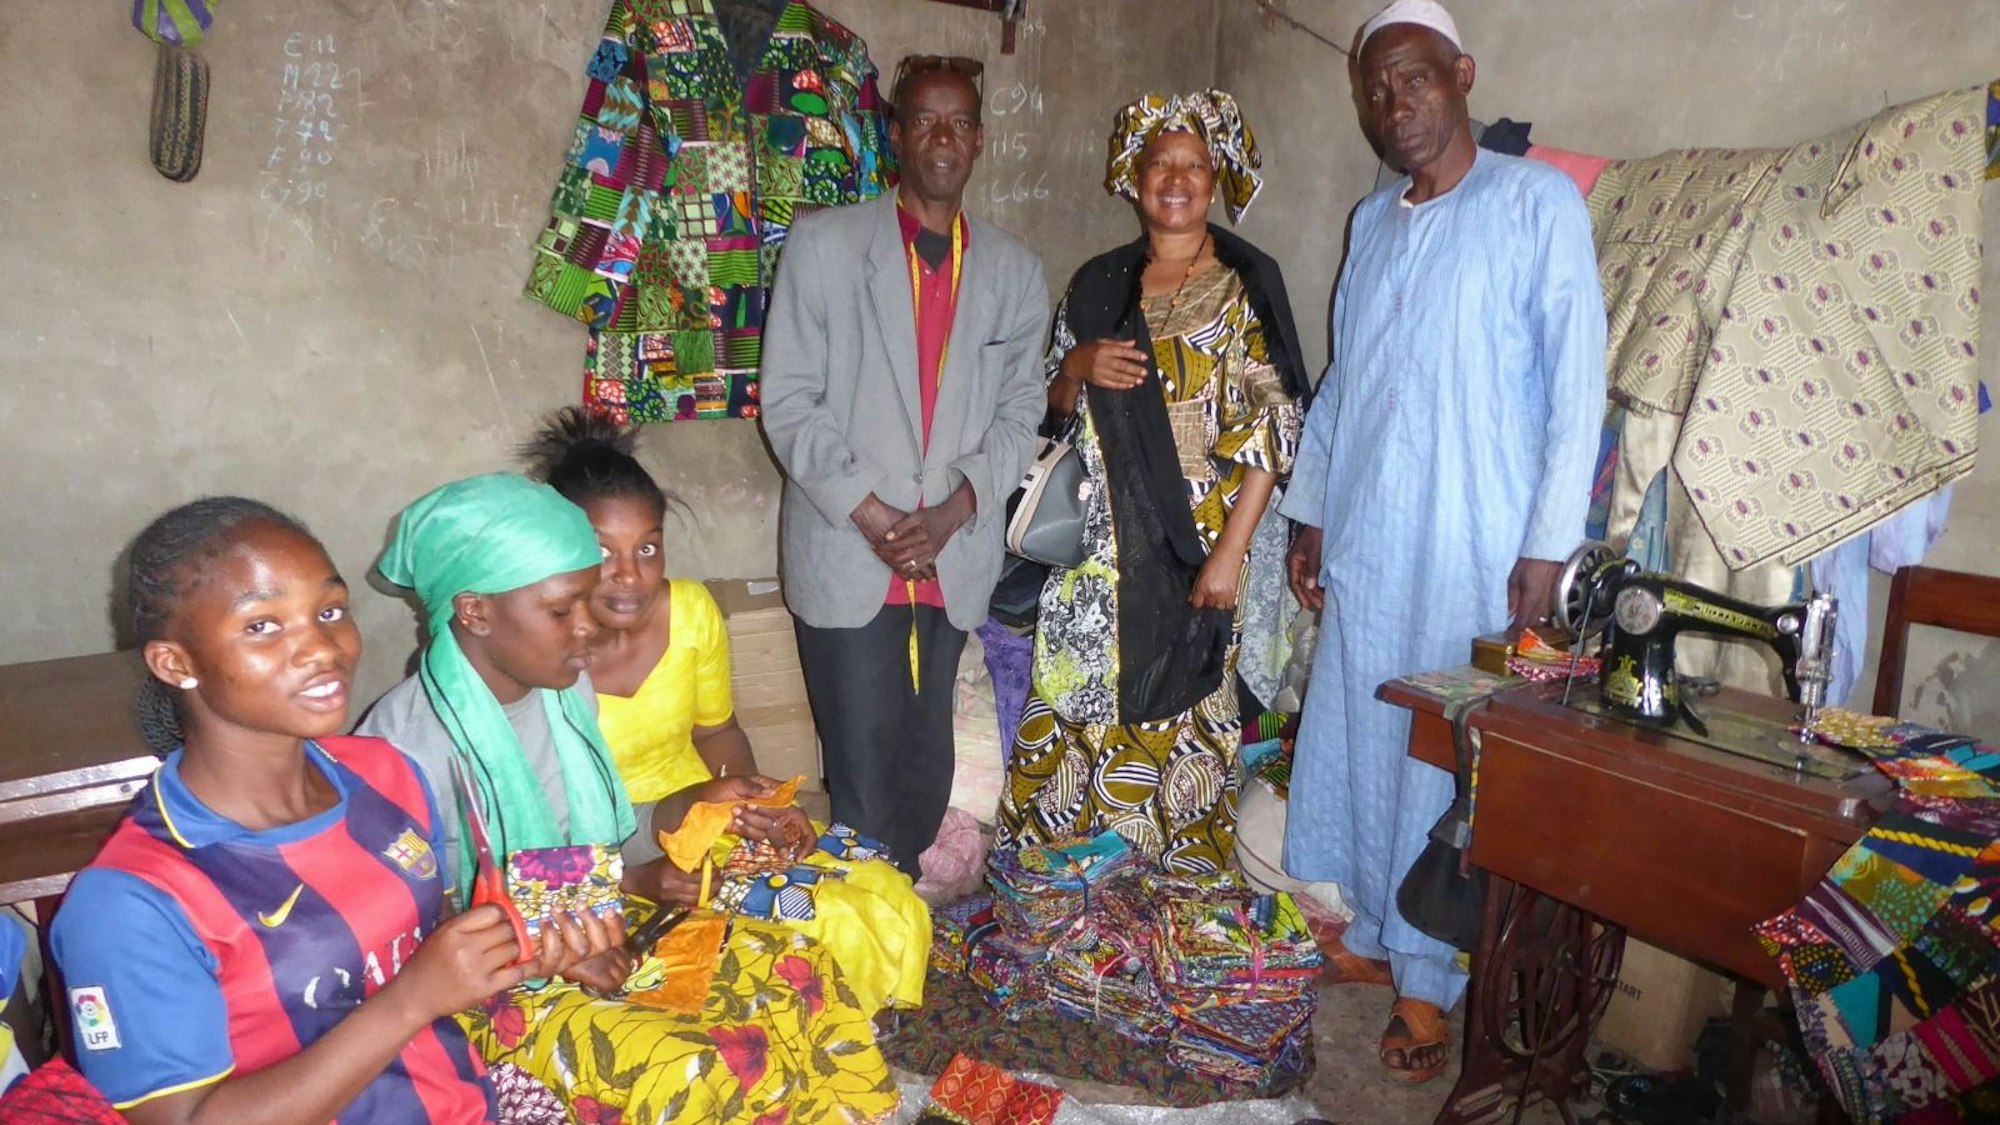 Frauen und Männer in Guinea nähen Lappenclown-Kostüme.